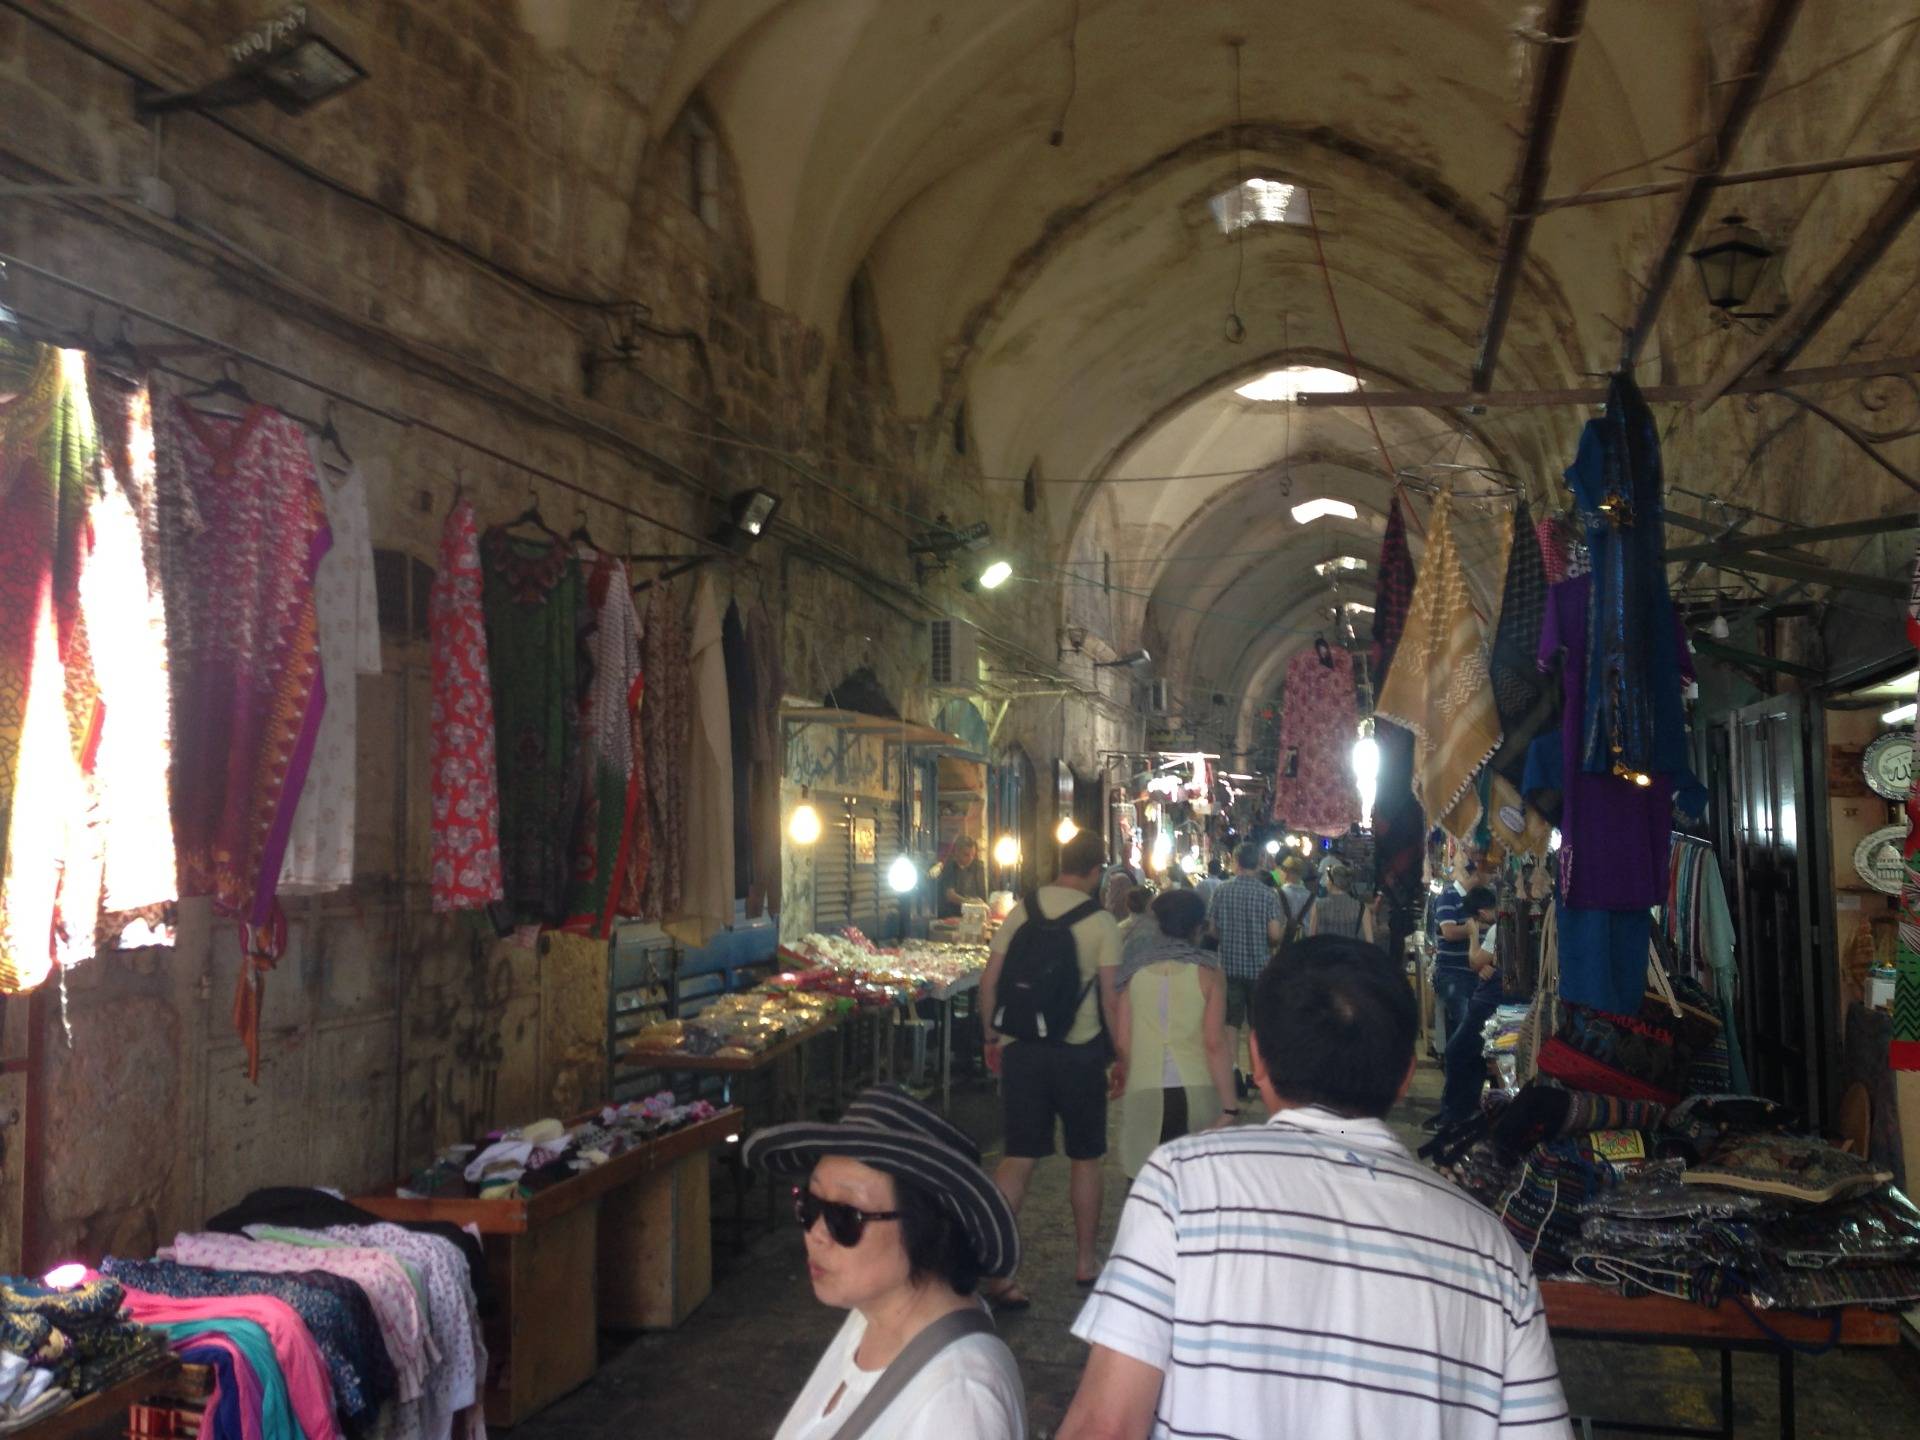 Bazaar - The Market